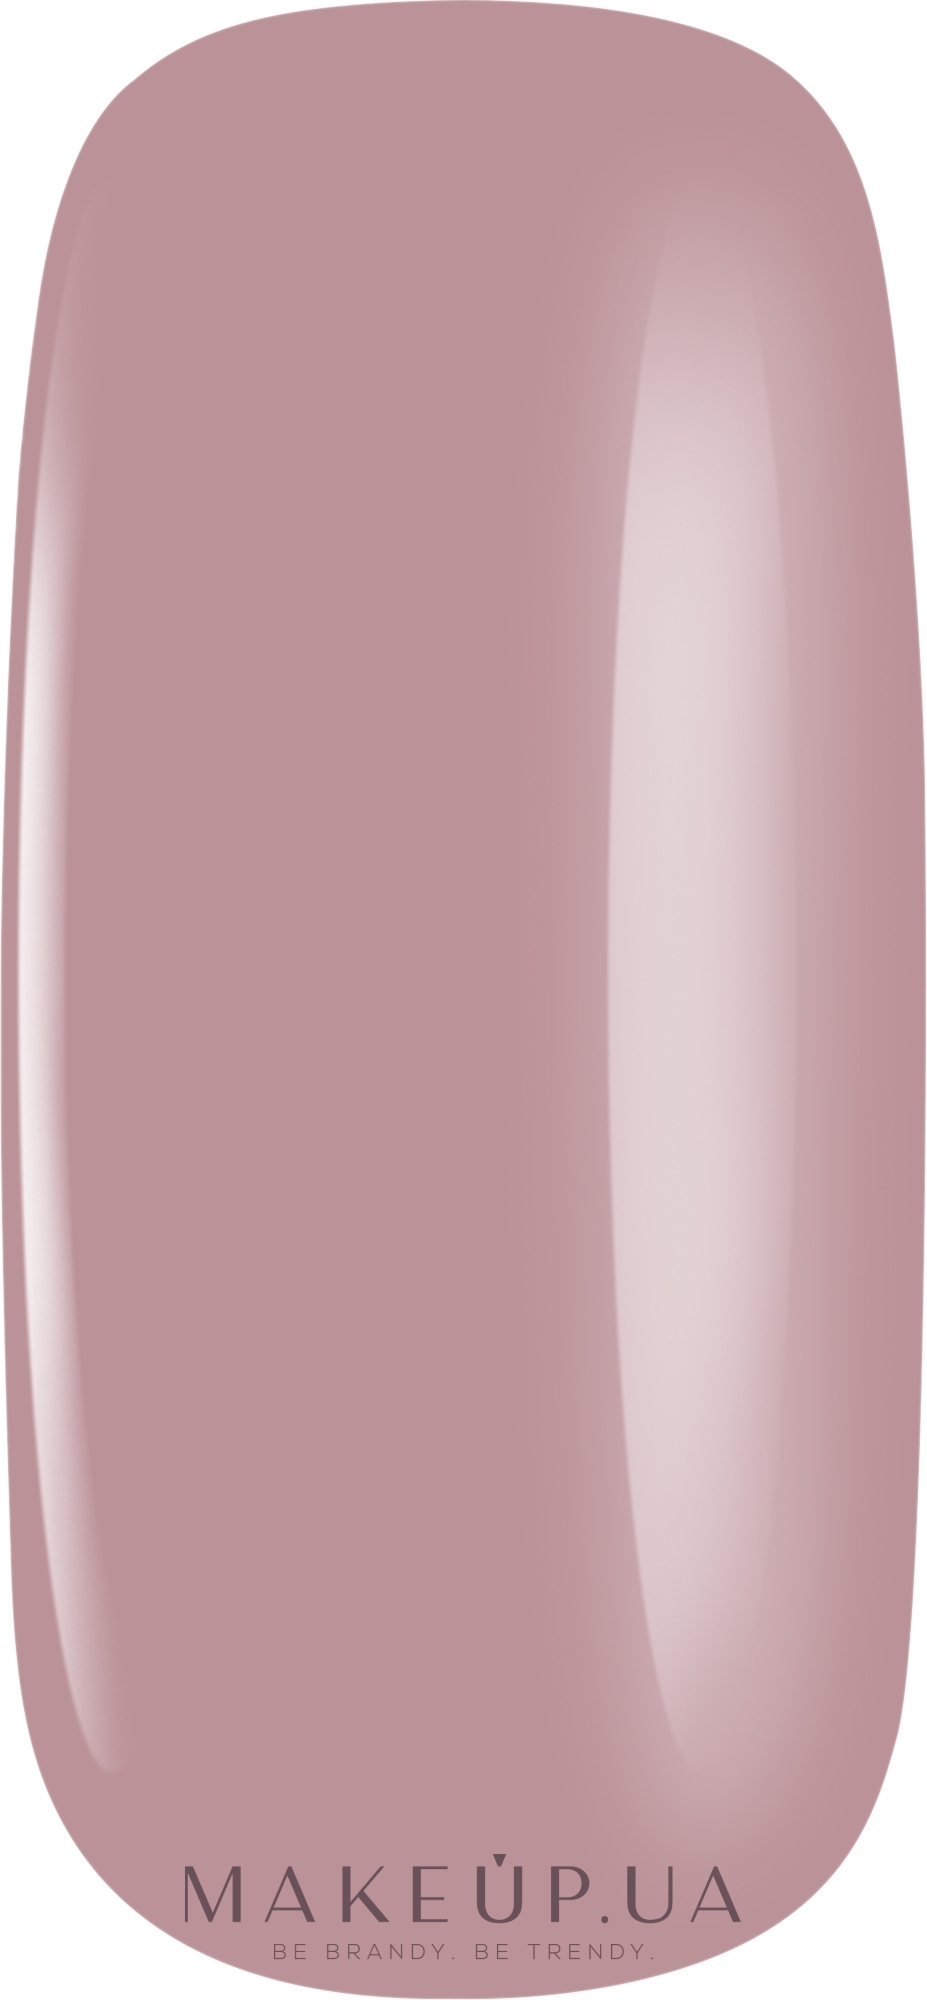 Гель-лак для ногтей - PNB Gel Polish Mini Limited Edition — фото 353 - Milk and Honey Pink